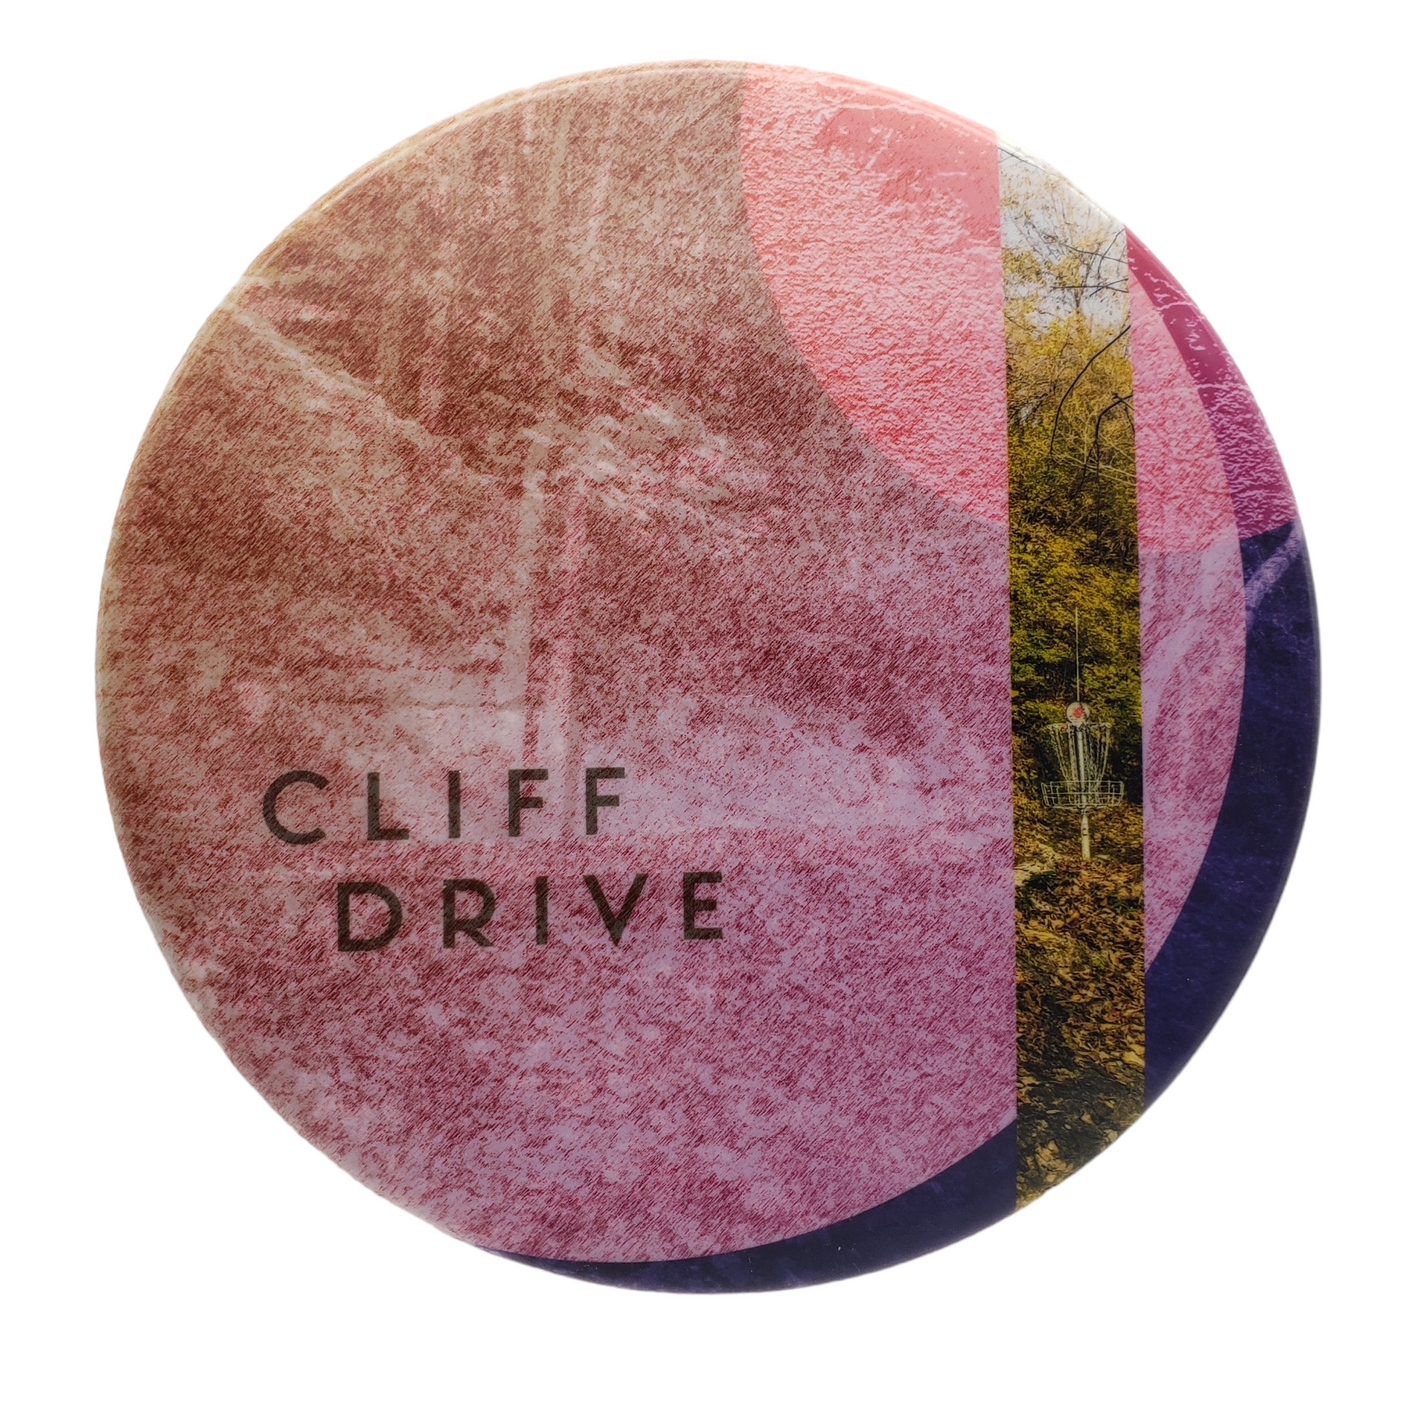 Kansas City Course Series: (Cliff Drive) Dynamic Discs Fuzion Suspect Disc Golf Disc